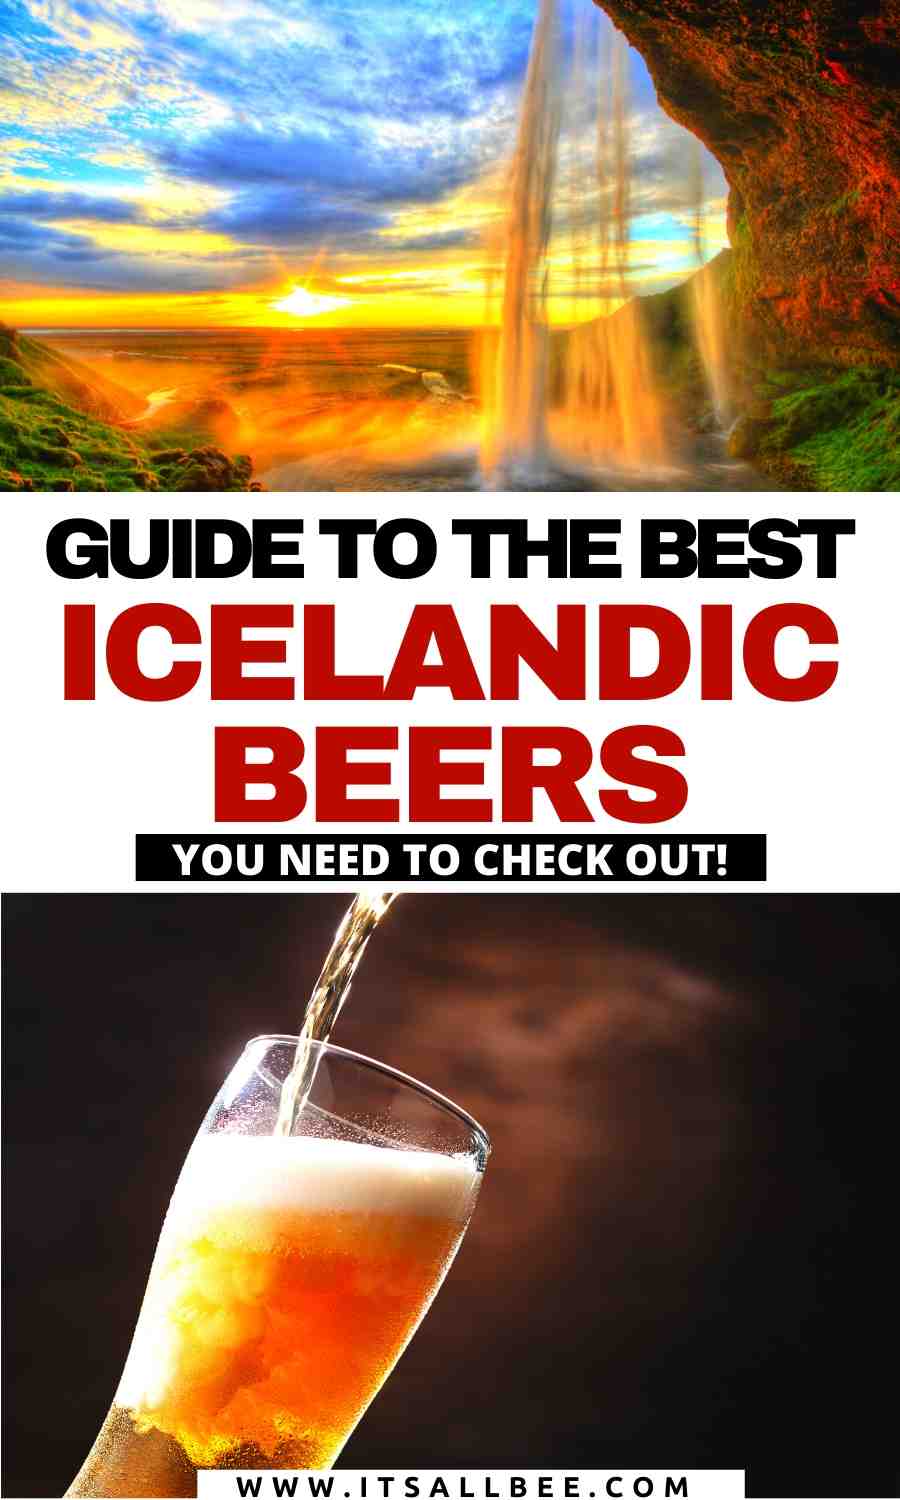 Snorri Icelandic ale, craft beer reykjavik, einstok Icelandic dopplebock, Icelandic pale ale, akureyri beer, brewery best beer iceland, best Icelandic beer, viking brewery, price of beer, cost, most popular beer in Iceland